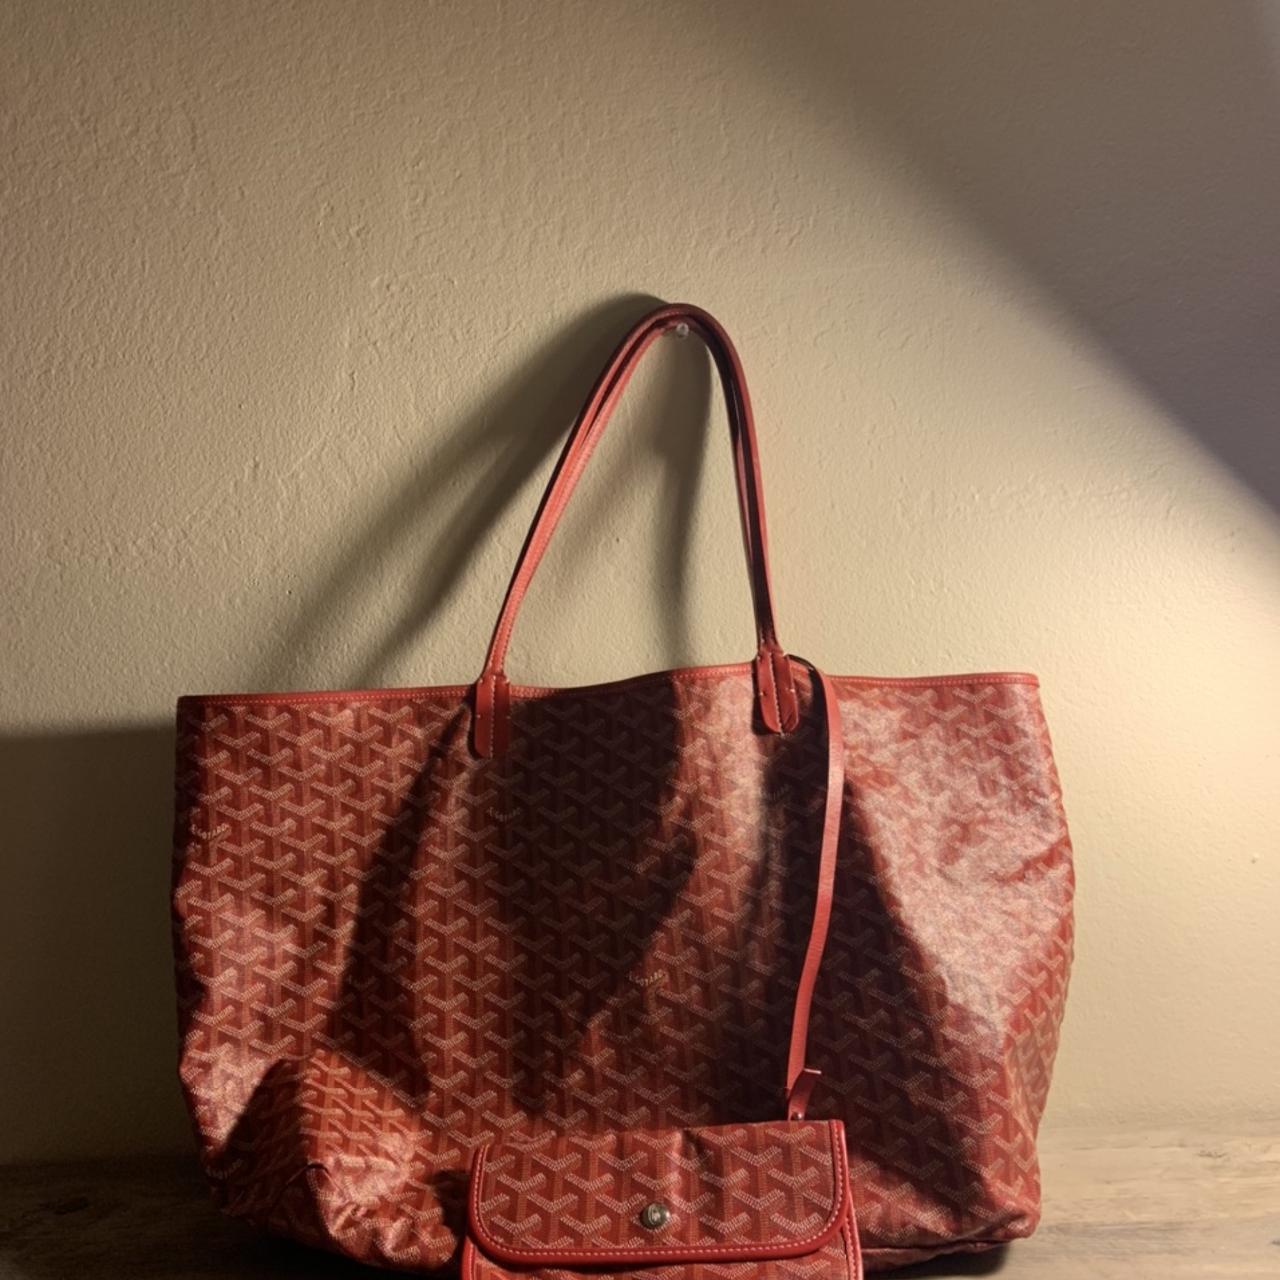 Goyard Tote Red Bags & Handbags for Women